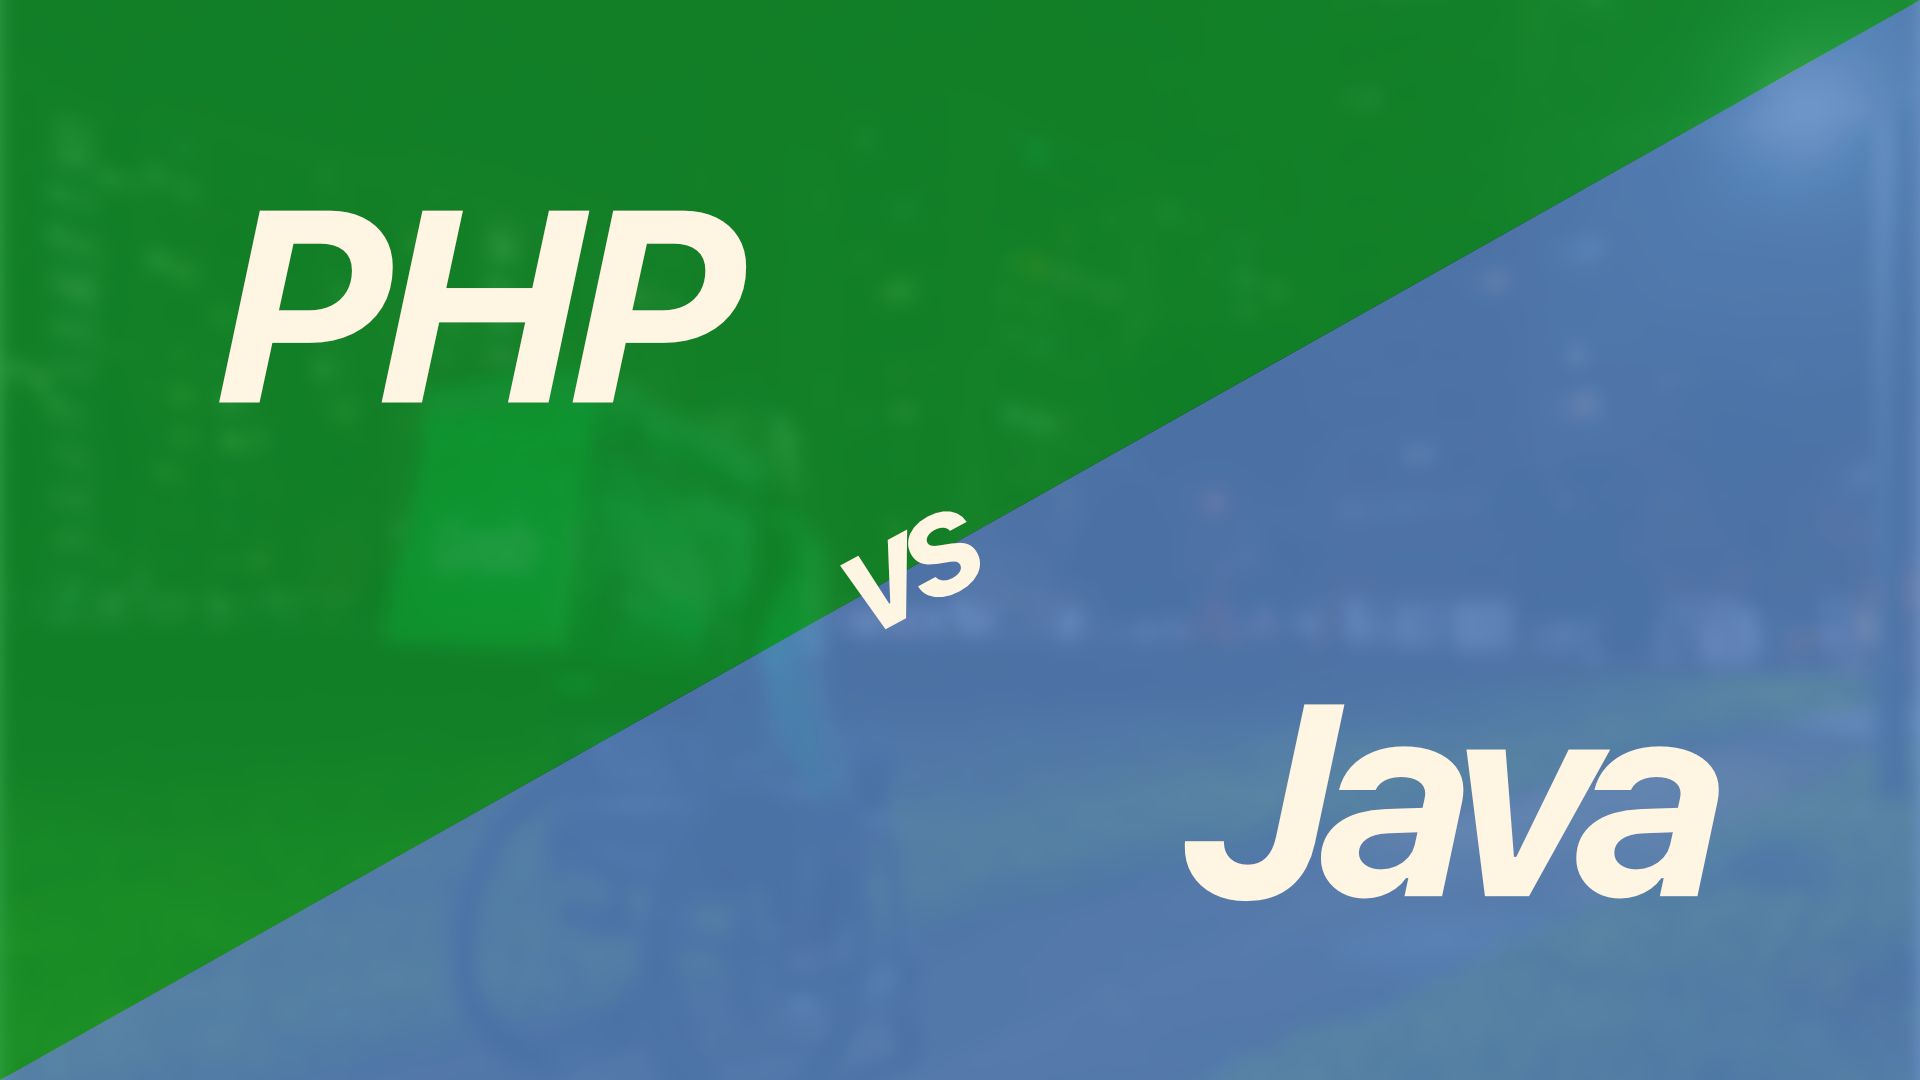 Đang làm PHP công ty bắt chuyển qua Java - Nên hay không?